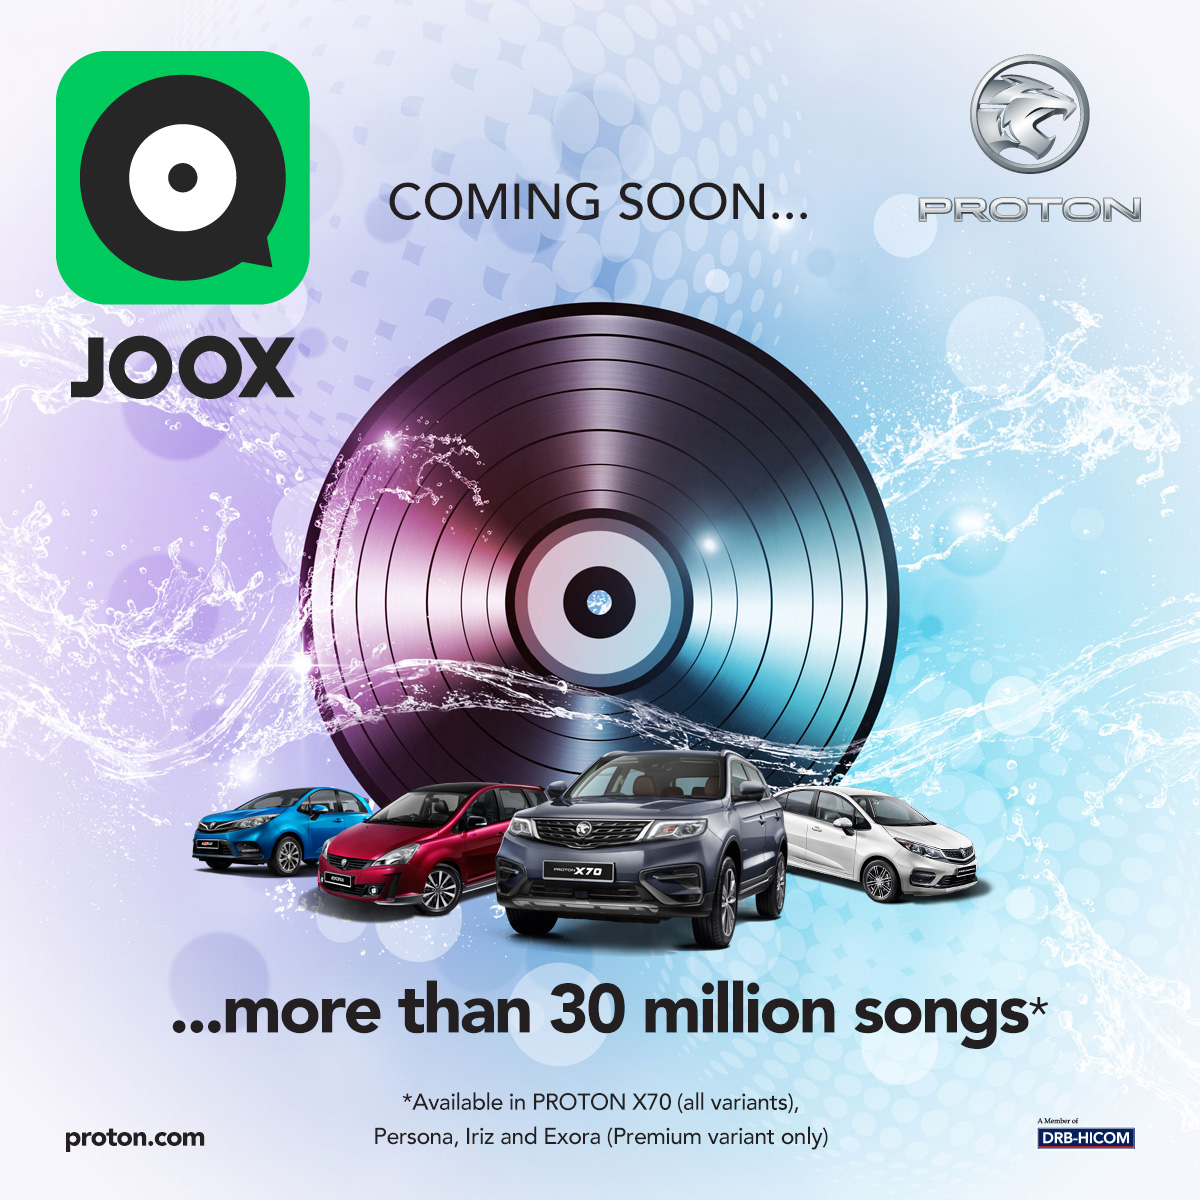 Proton pindah fungsi streaming muzik online ke Joox – tawar 30 juta lagu percuma, OTA bermula 27 Mac